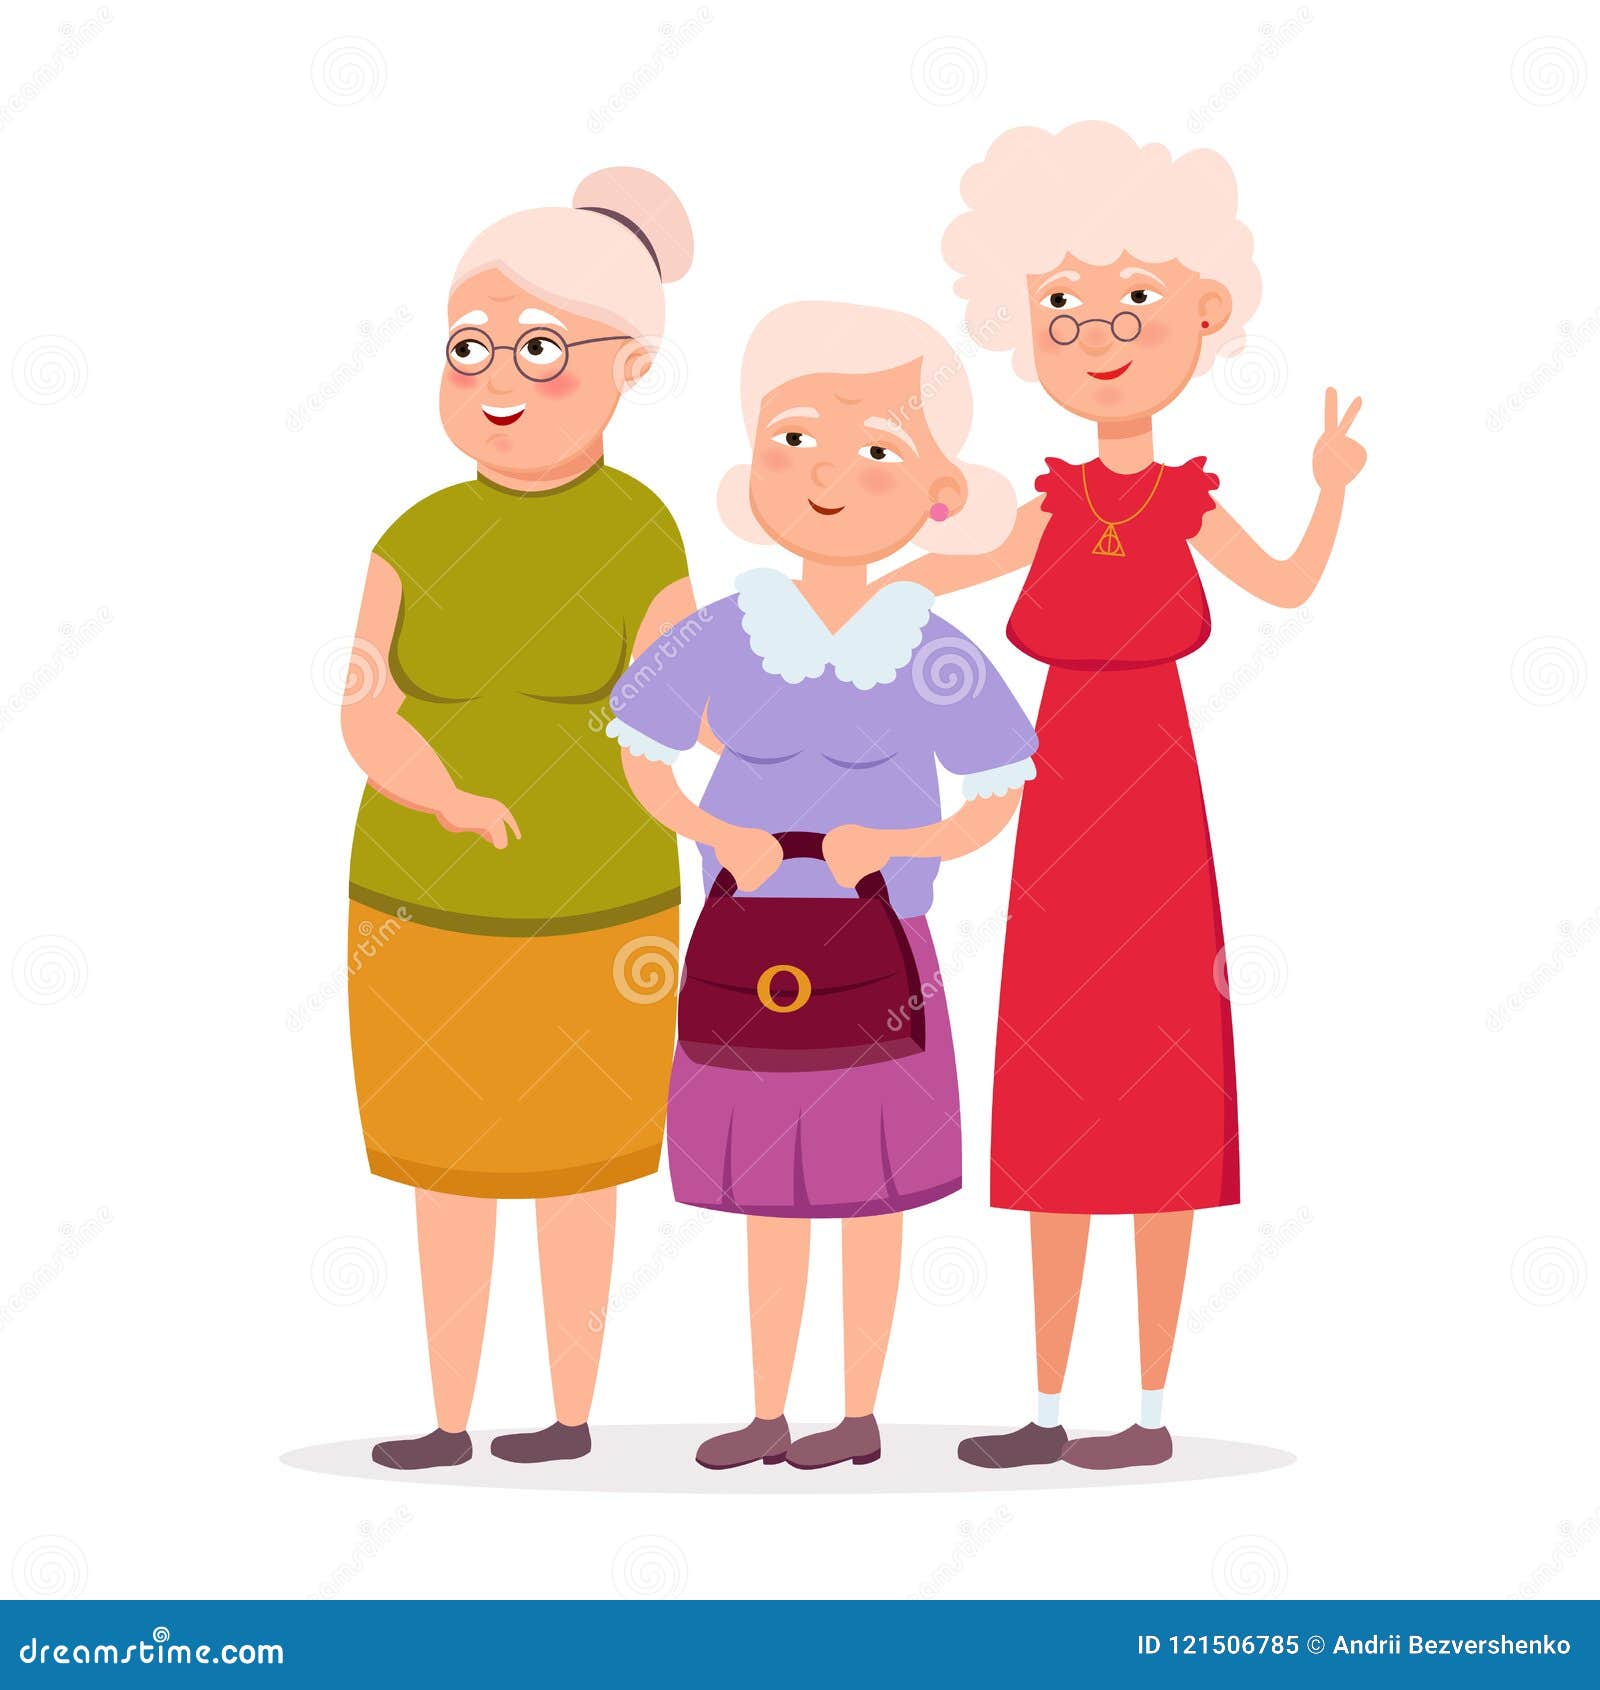 Grandma Friends